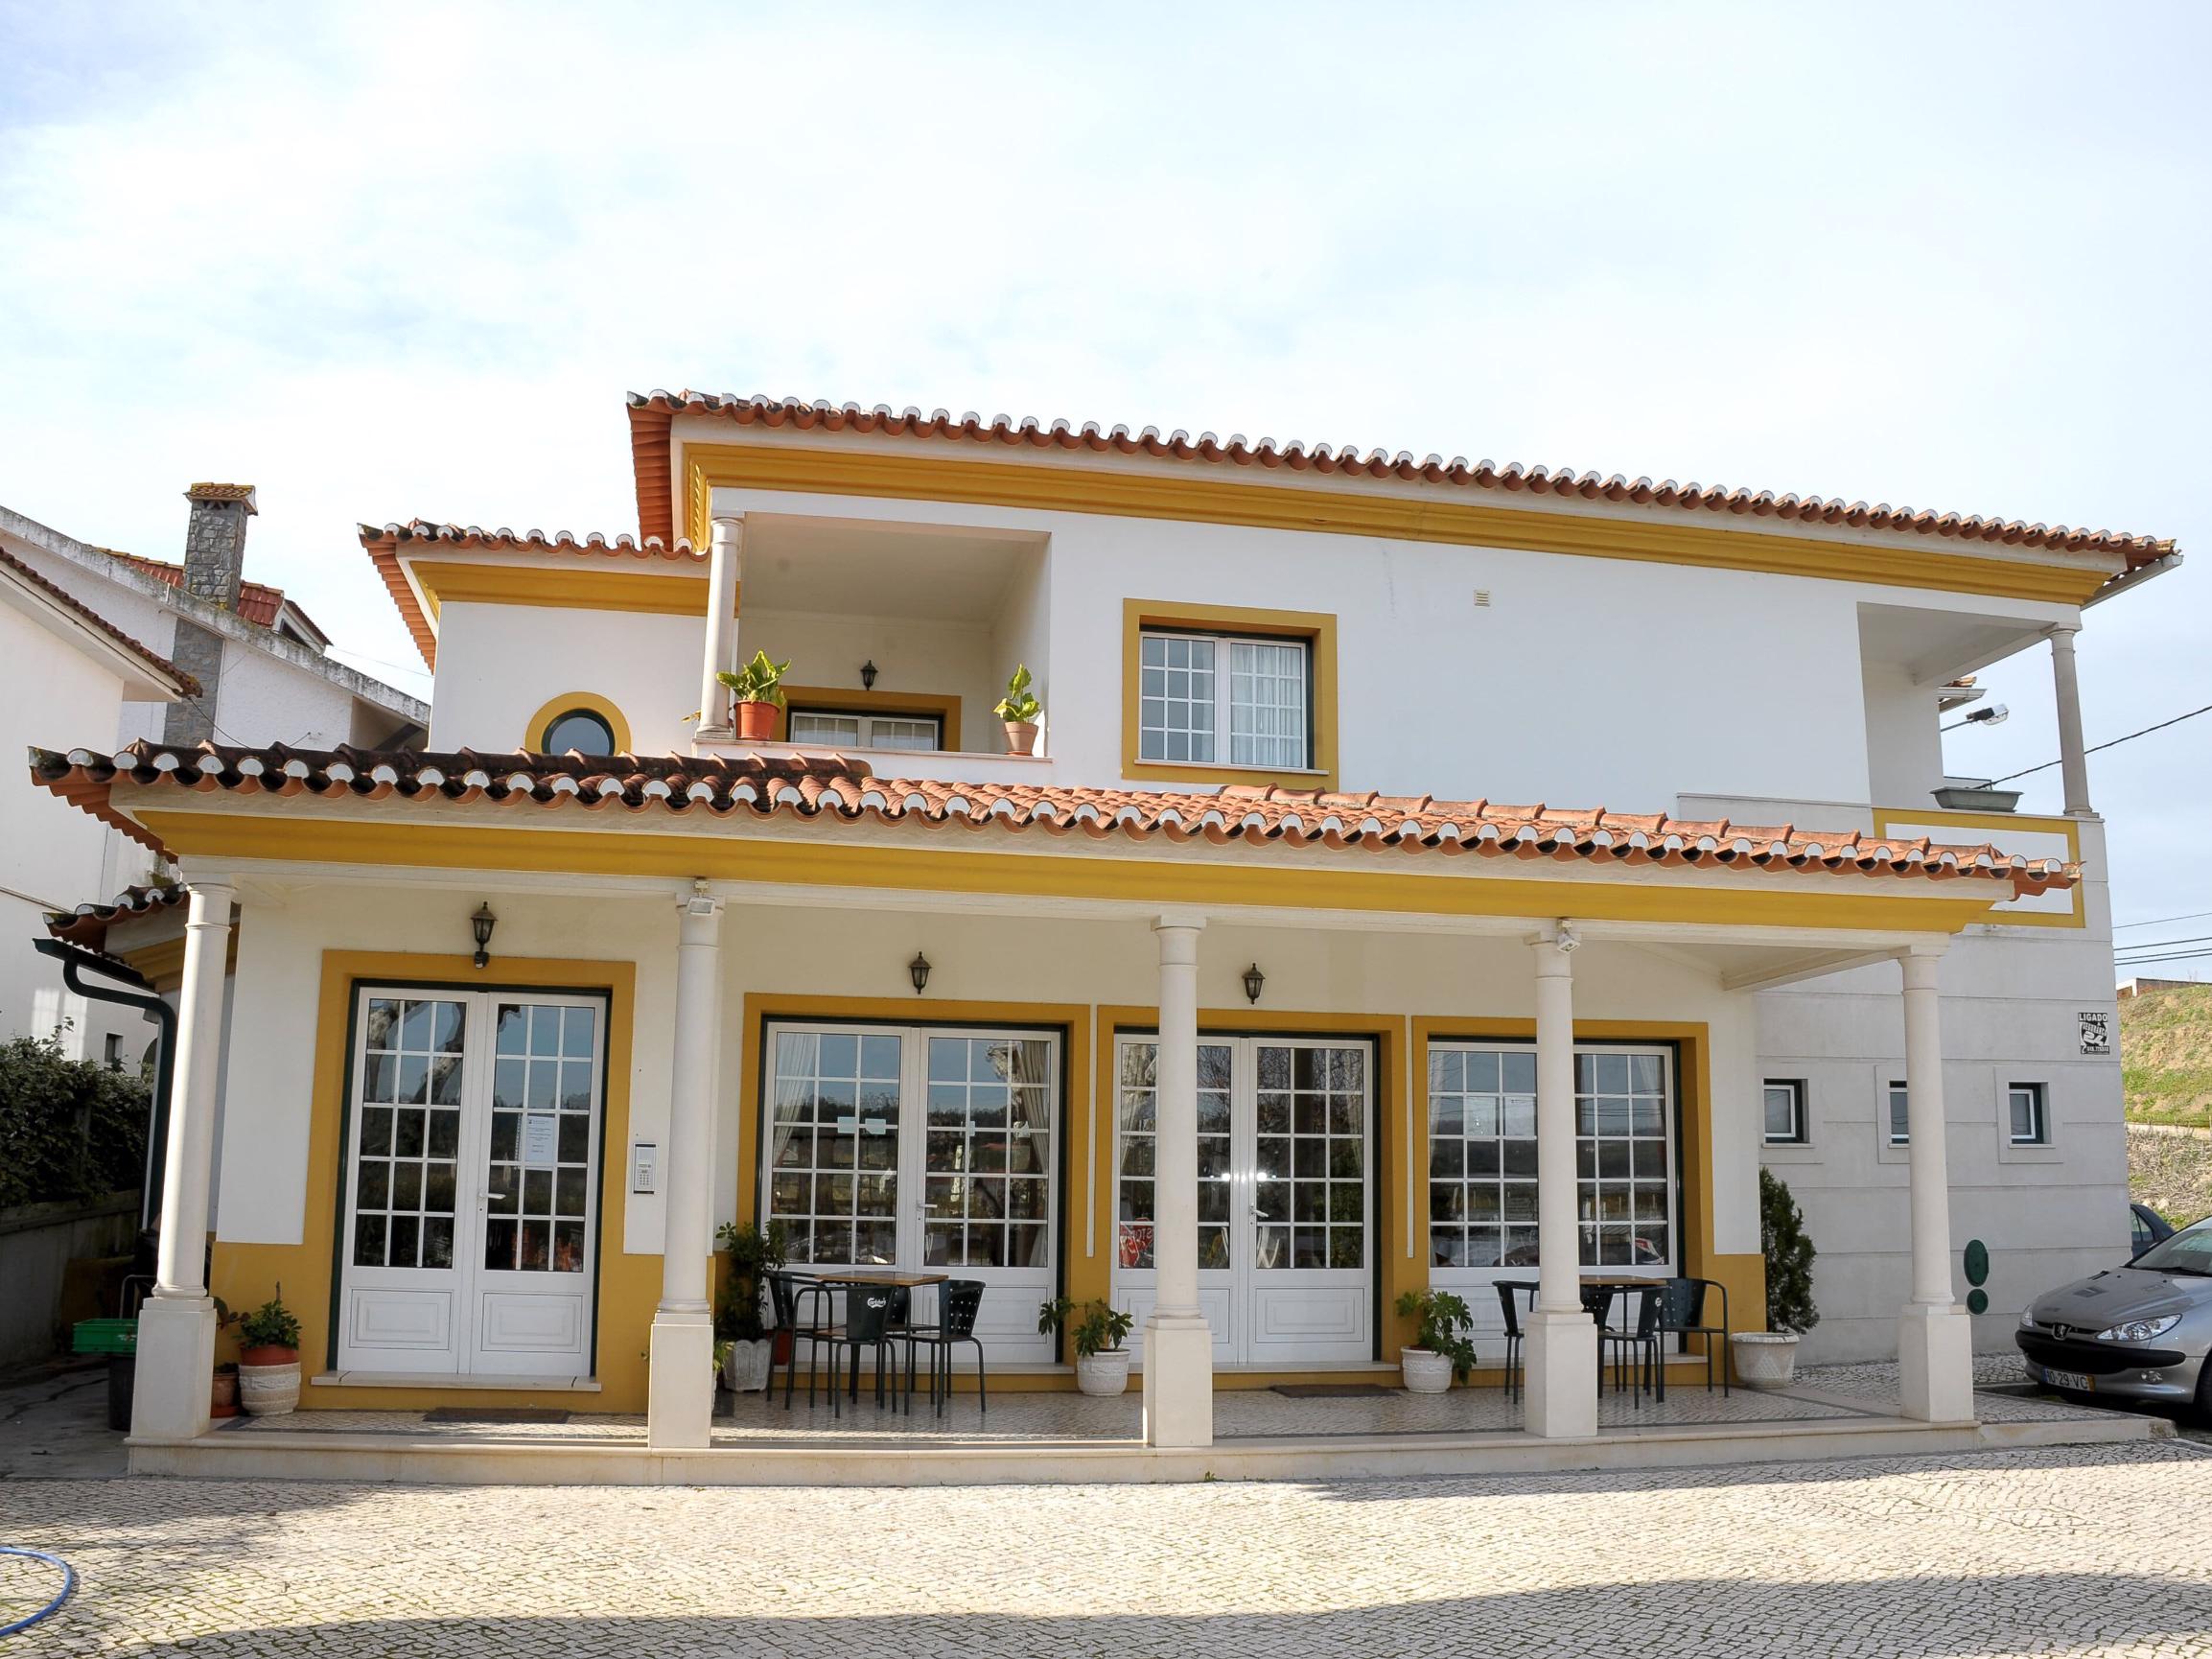 Fachada - O Restaurante Ninho do Falcão fica localizado entre Tomar e a Barragem do Castelo de Bode, servindo comida tradicional tendo  uma sala climatizada com ocupação máxima de 80 lugares. 